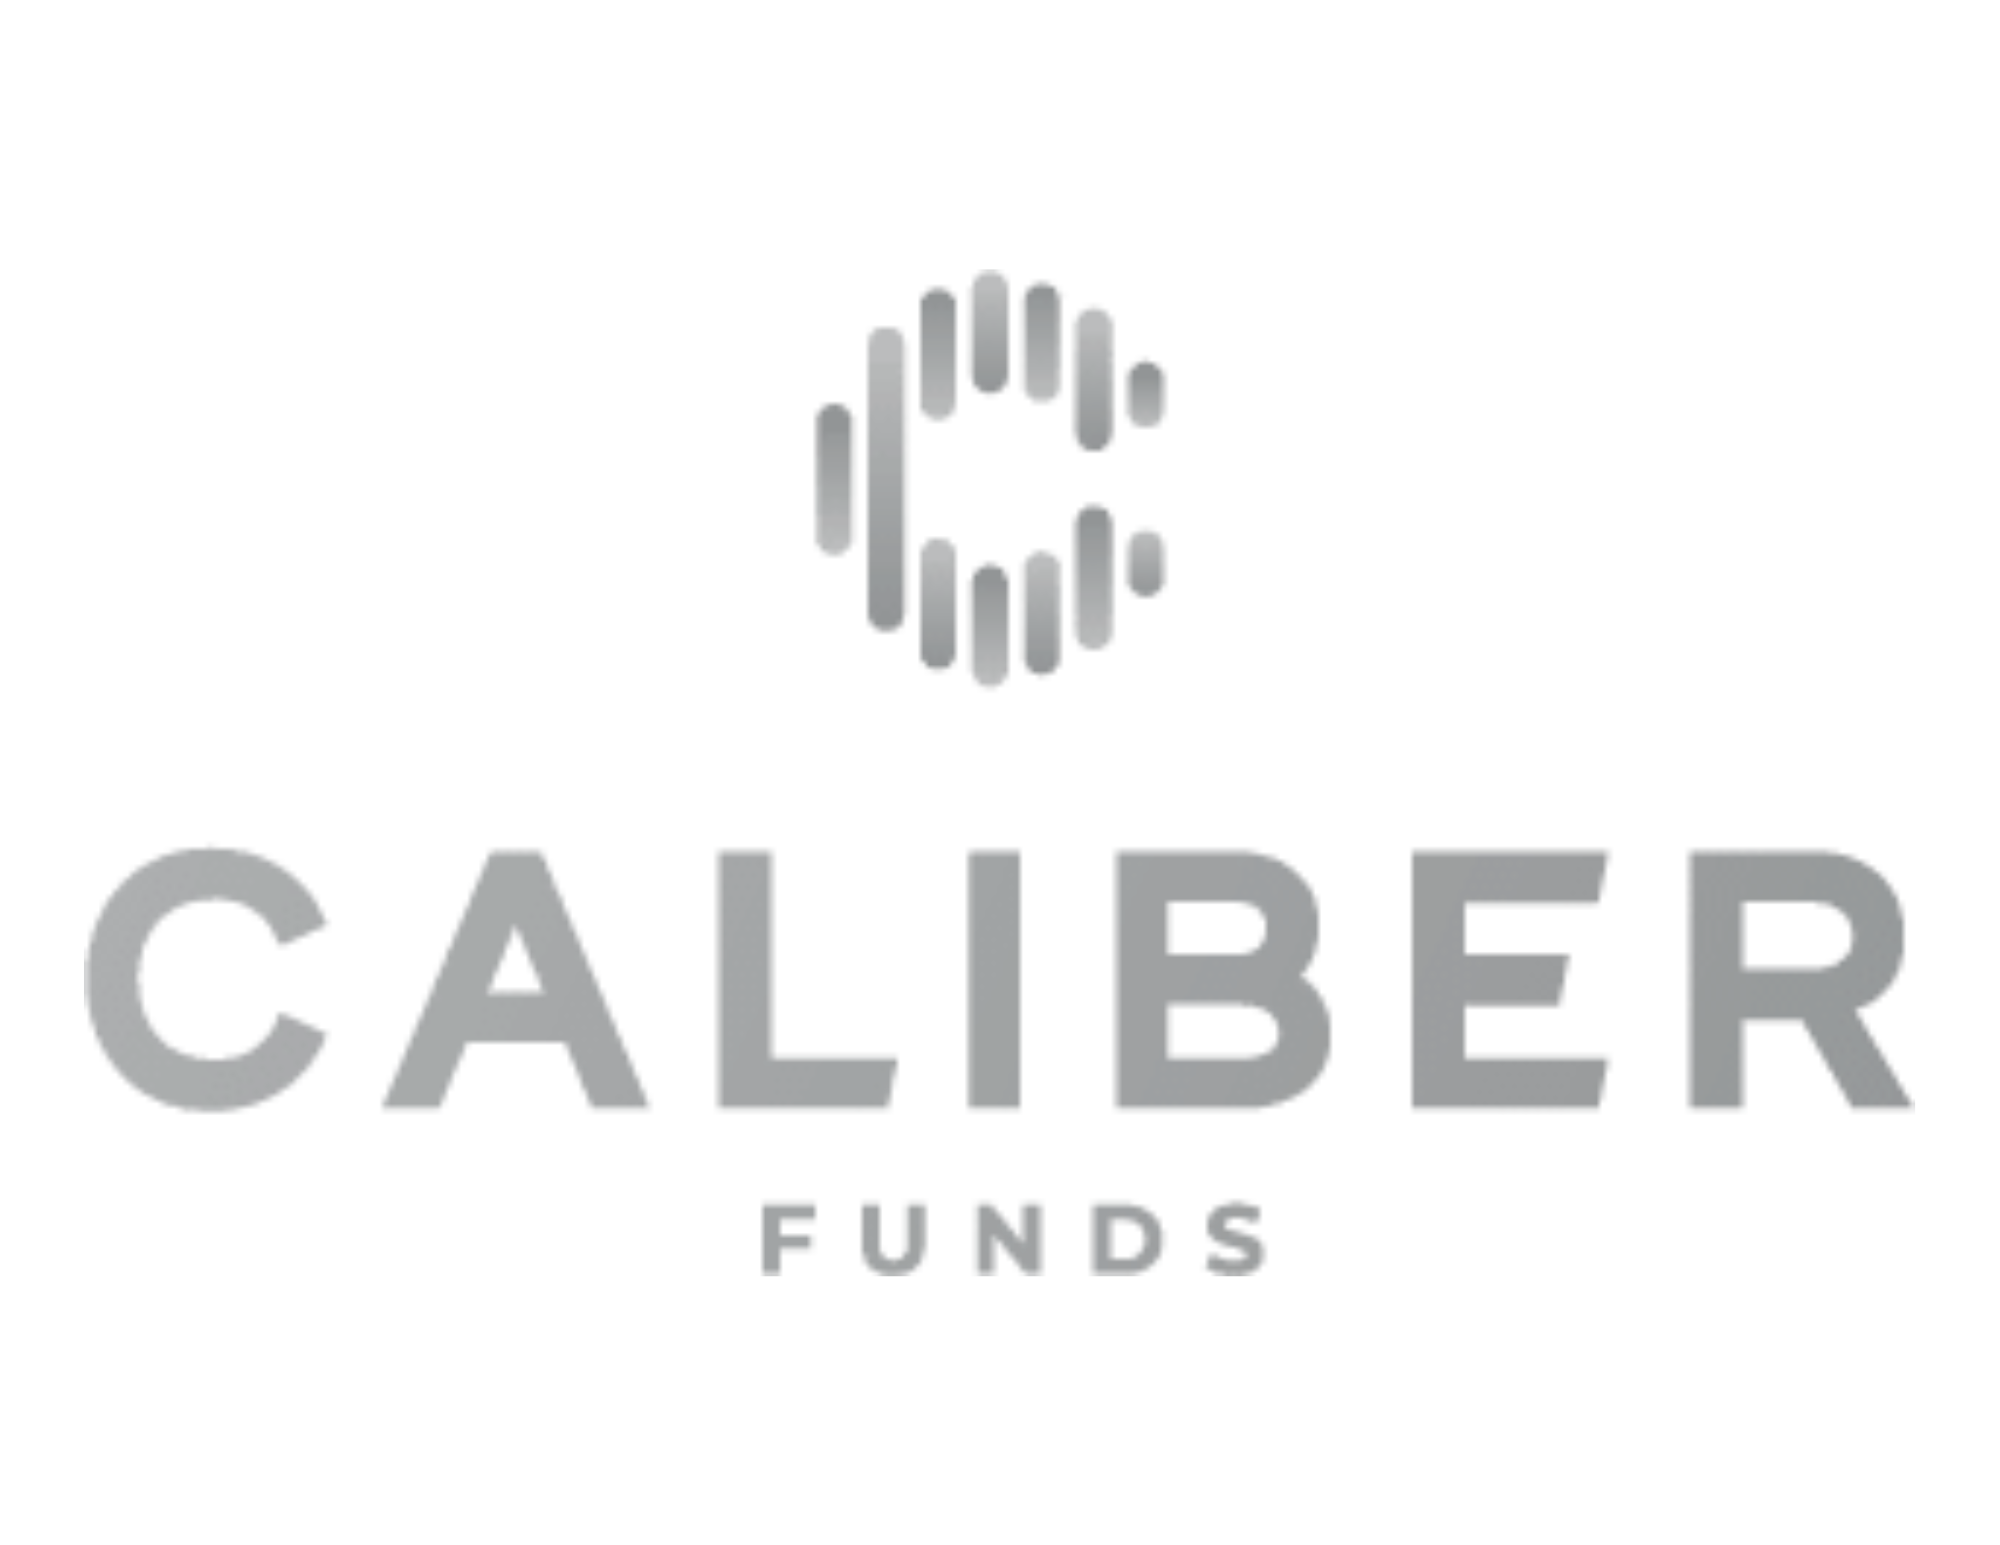 Caliber Funds